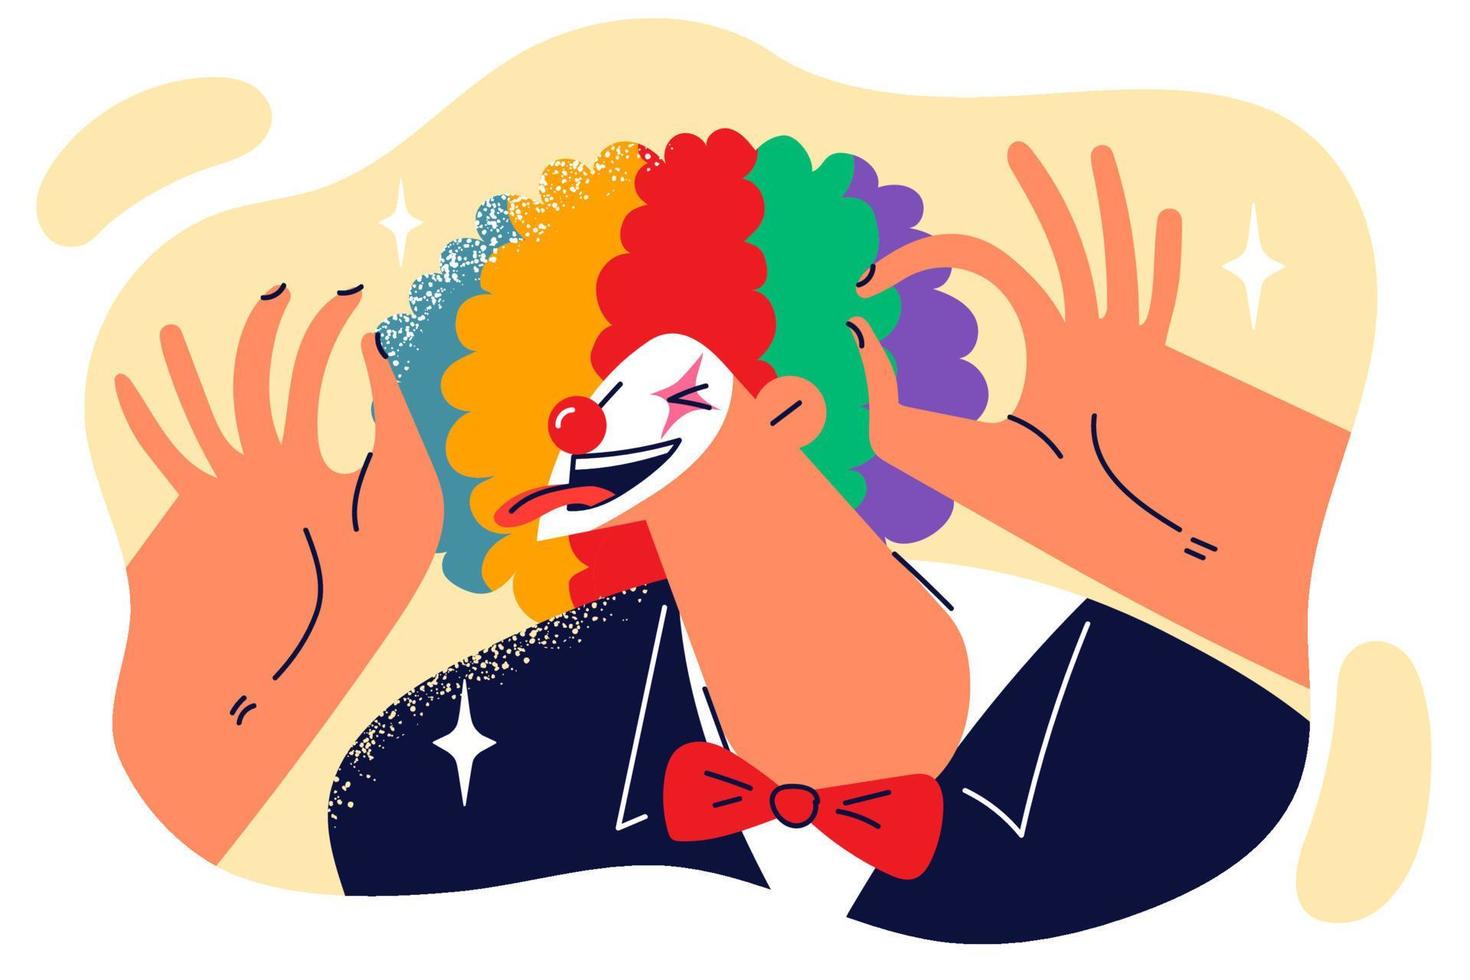 clown stokjes uit tong en maakt grappig gezichten naar publiek lach Bij circus of humoristisch theatraal prestatie. clown brengt vreugde naar mensen gedurende feestelijk komedie tonen ontworpen naar juichen omhoog anderen vector